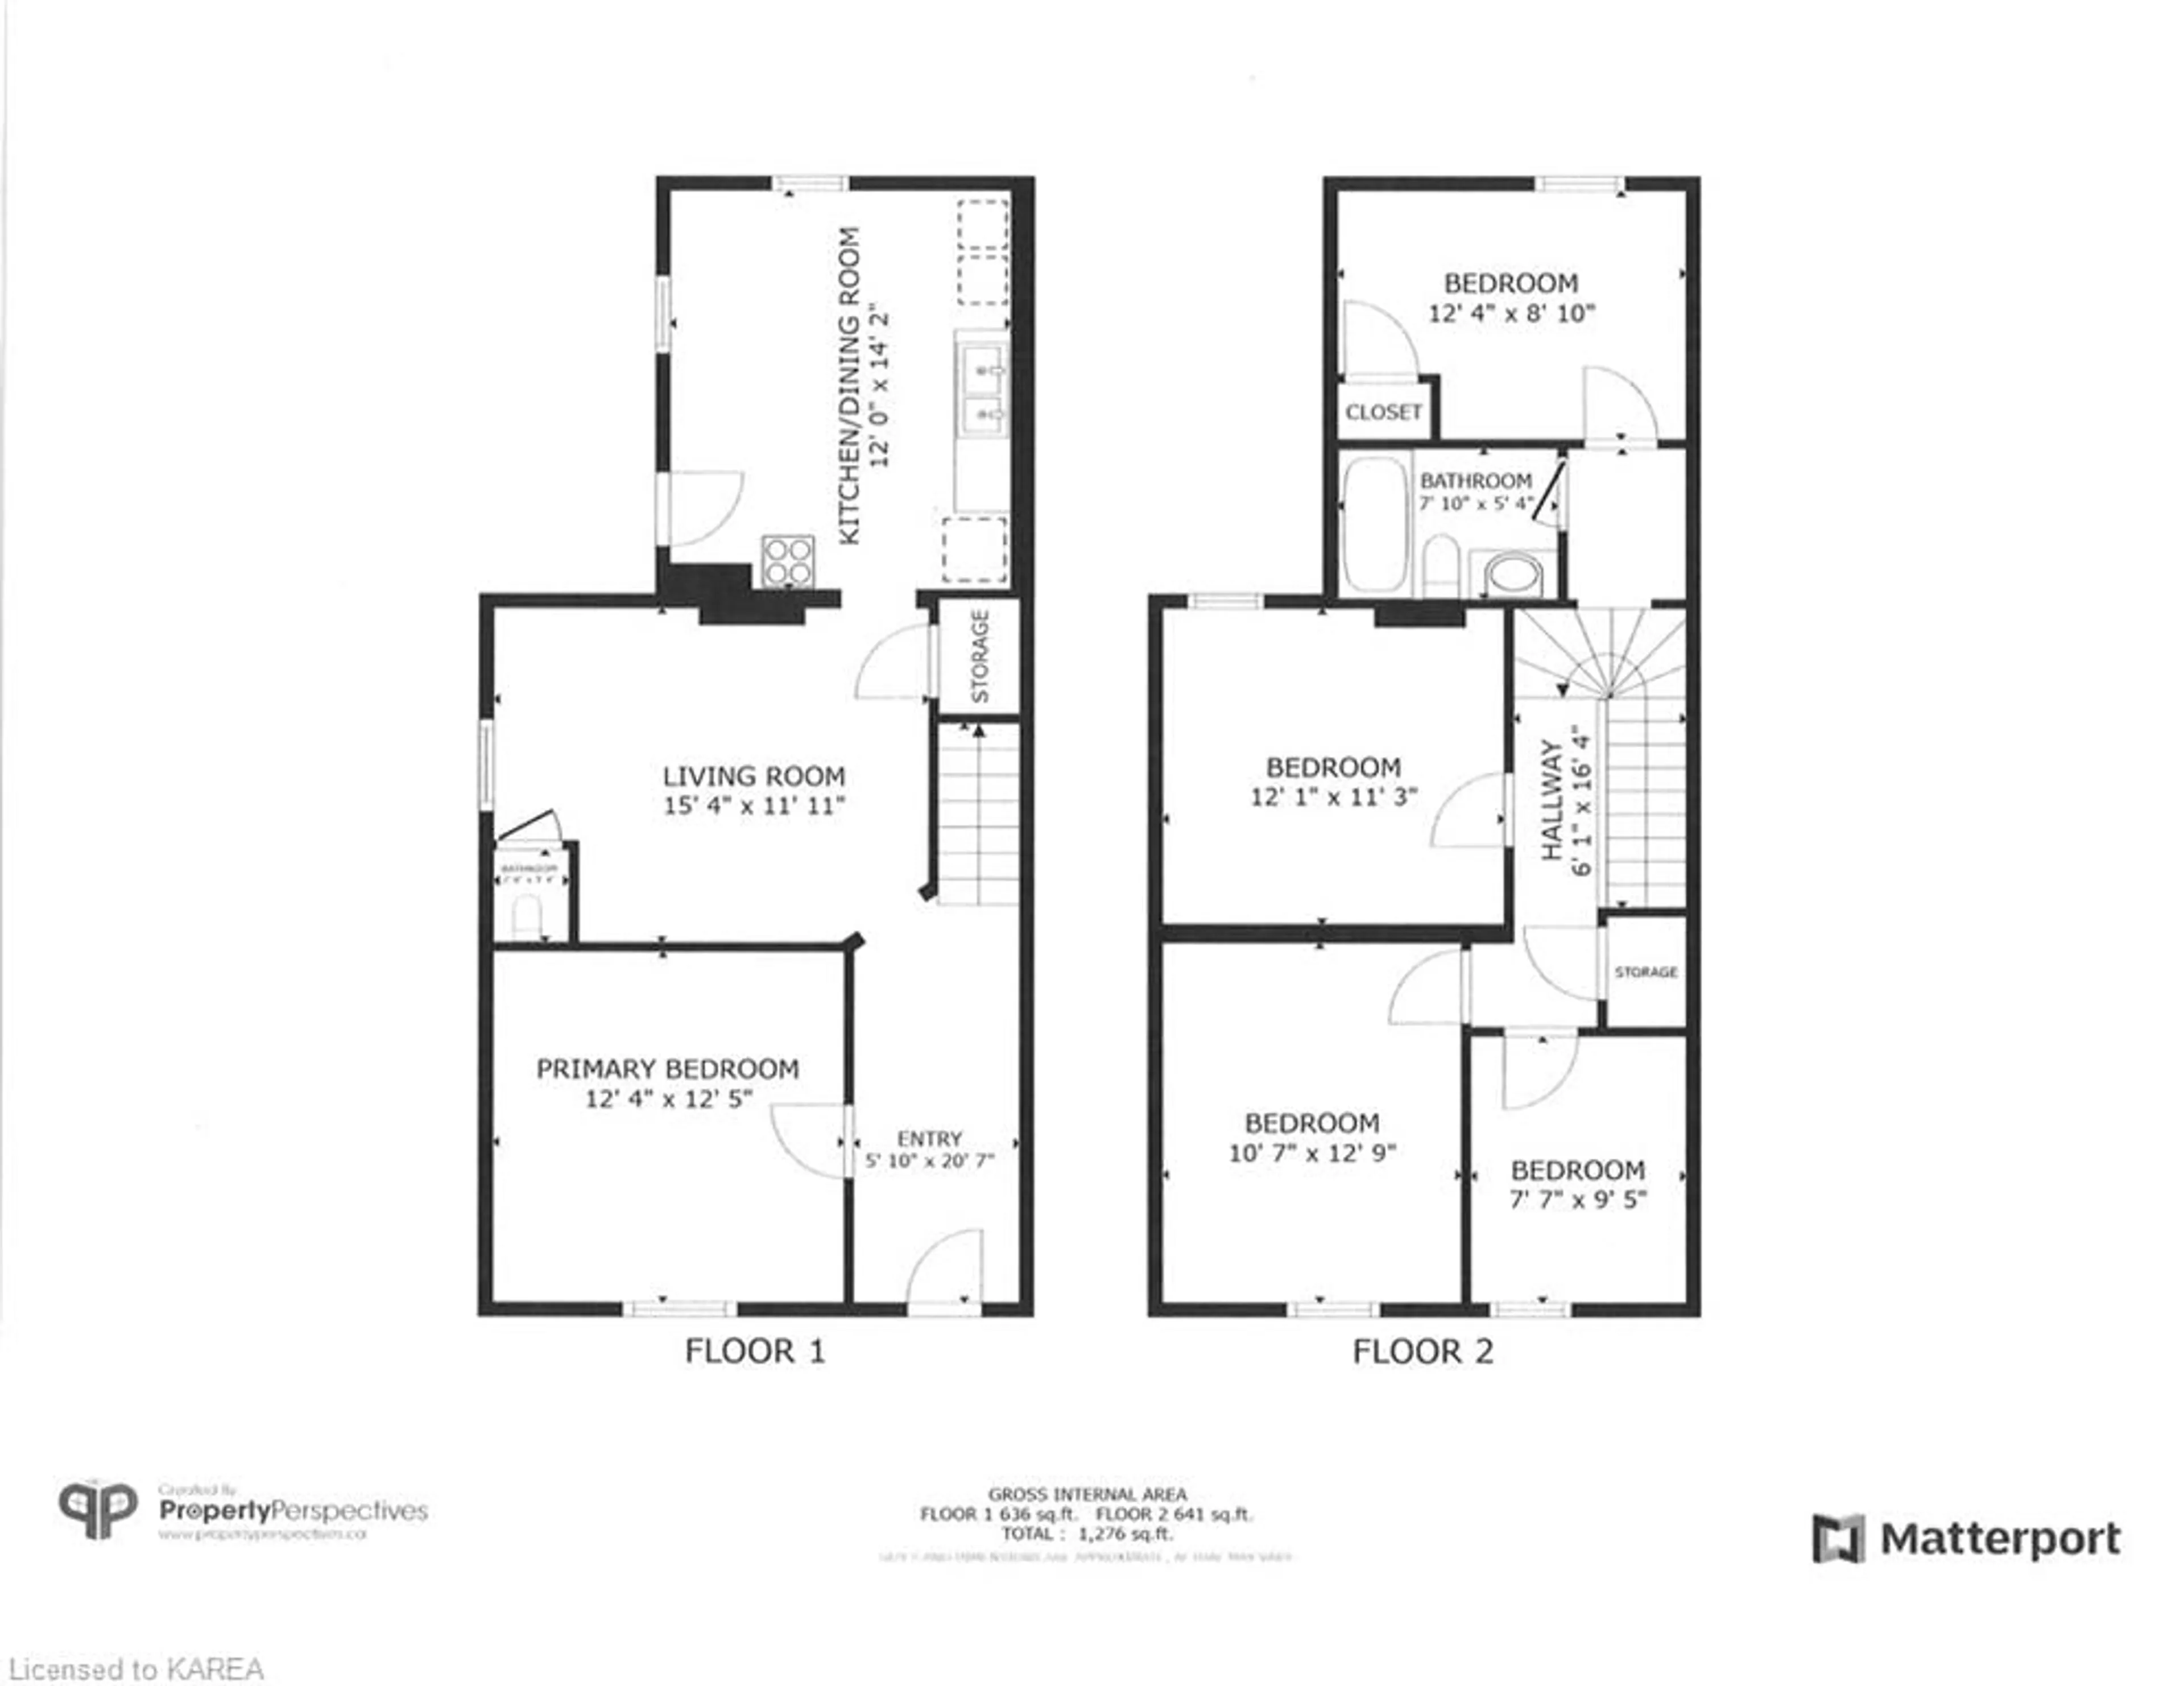 Floor plan for 425 Brock St, Kingston Ontario K7L 1T5